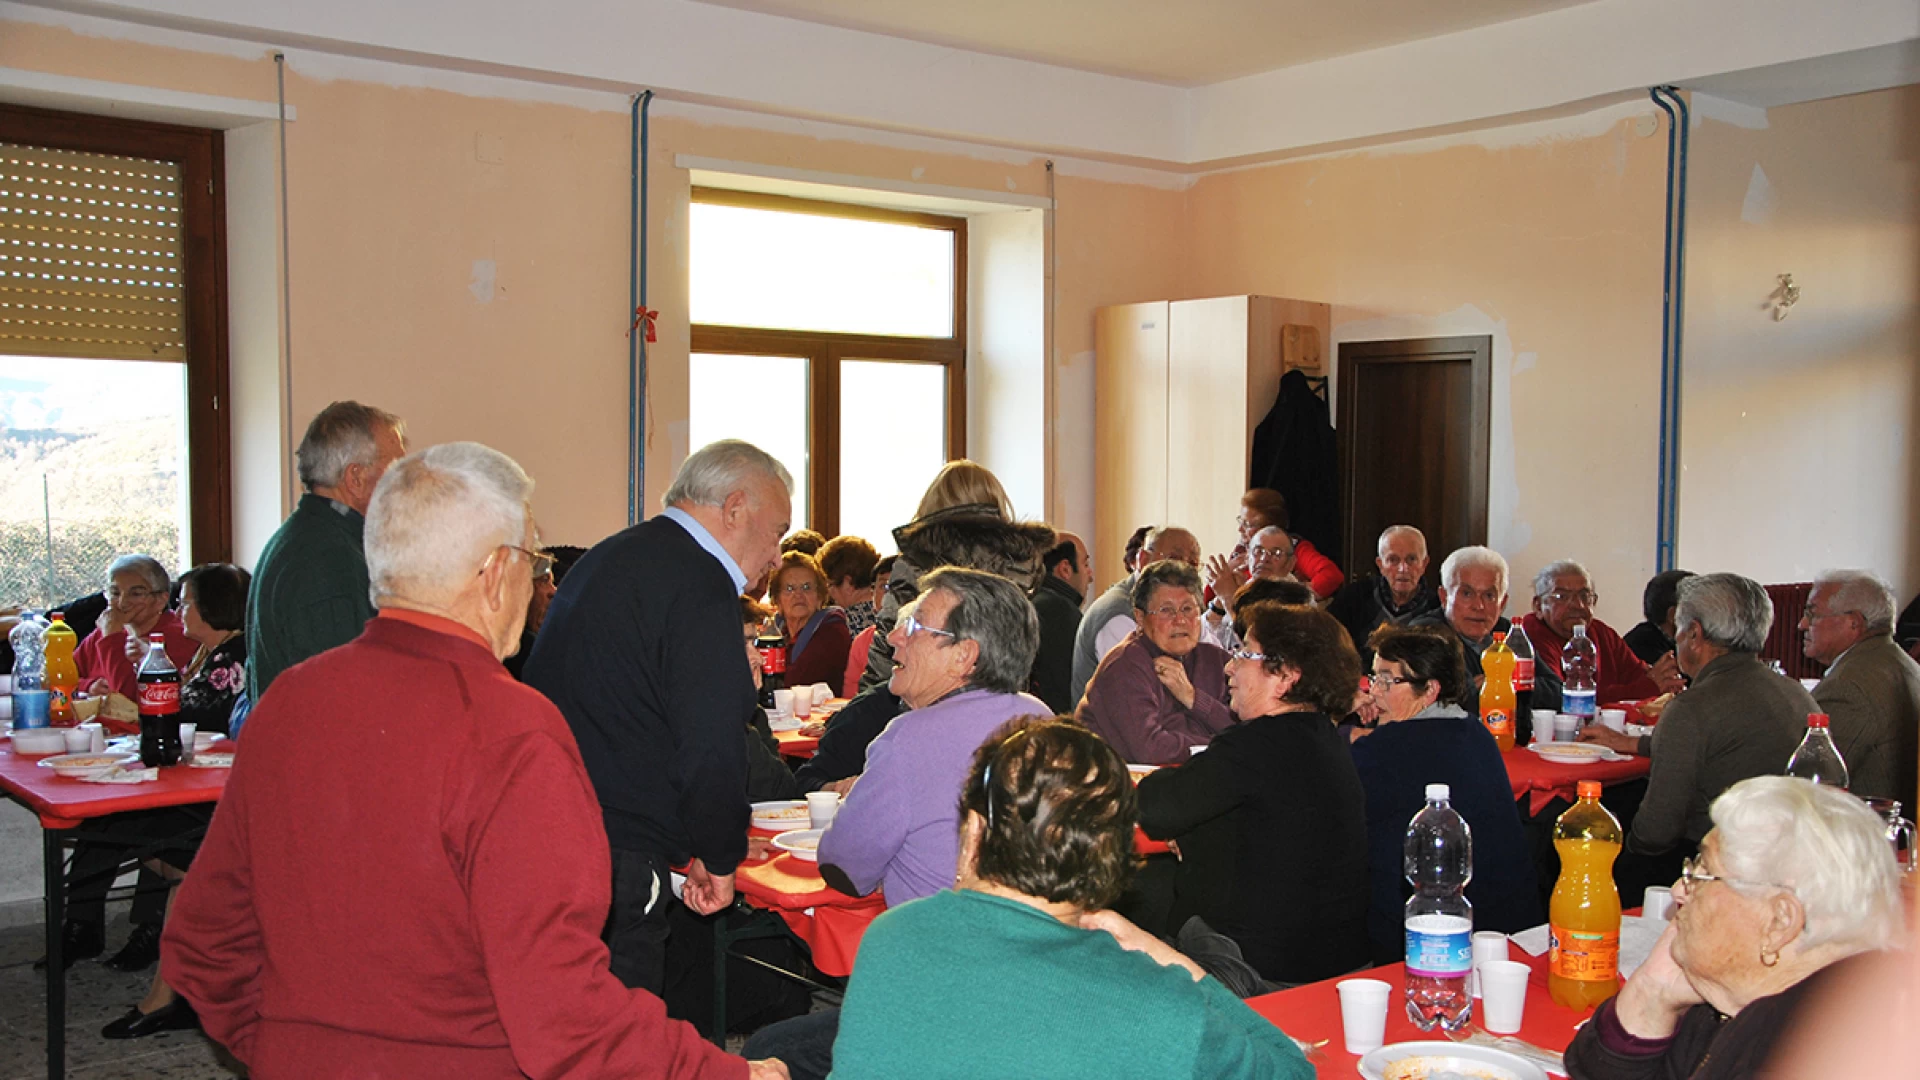 Fornelli: sabato 12 gennaio l’edizione 2019 del pranzo con gli anziani. Gli amministratori locali si trasformano in “camerieri” per un giorno.